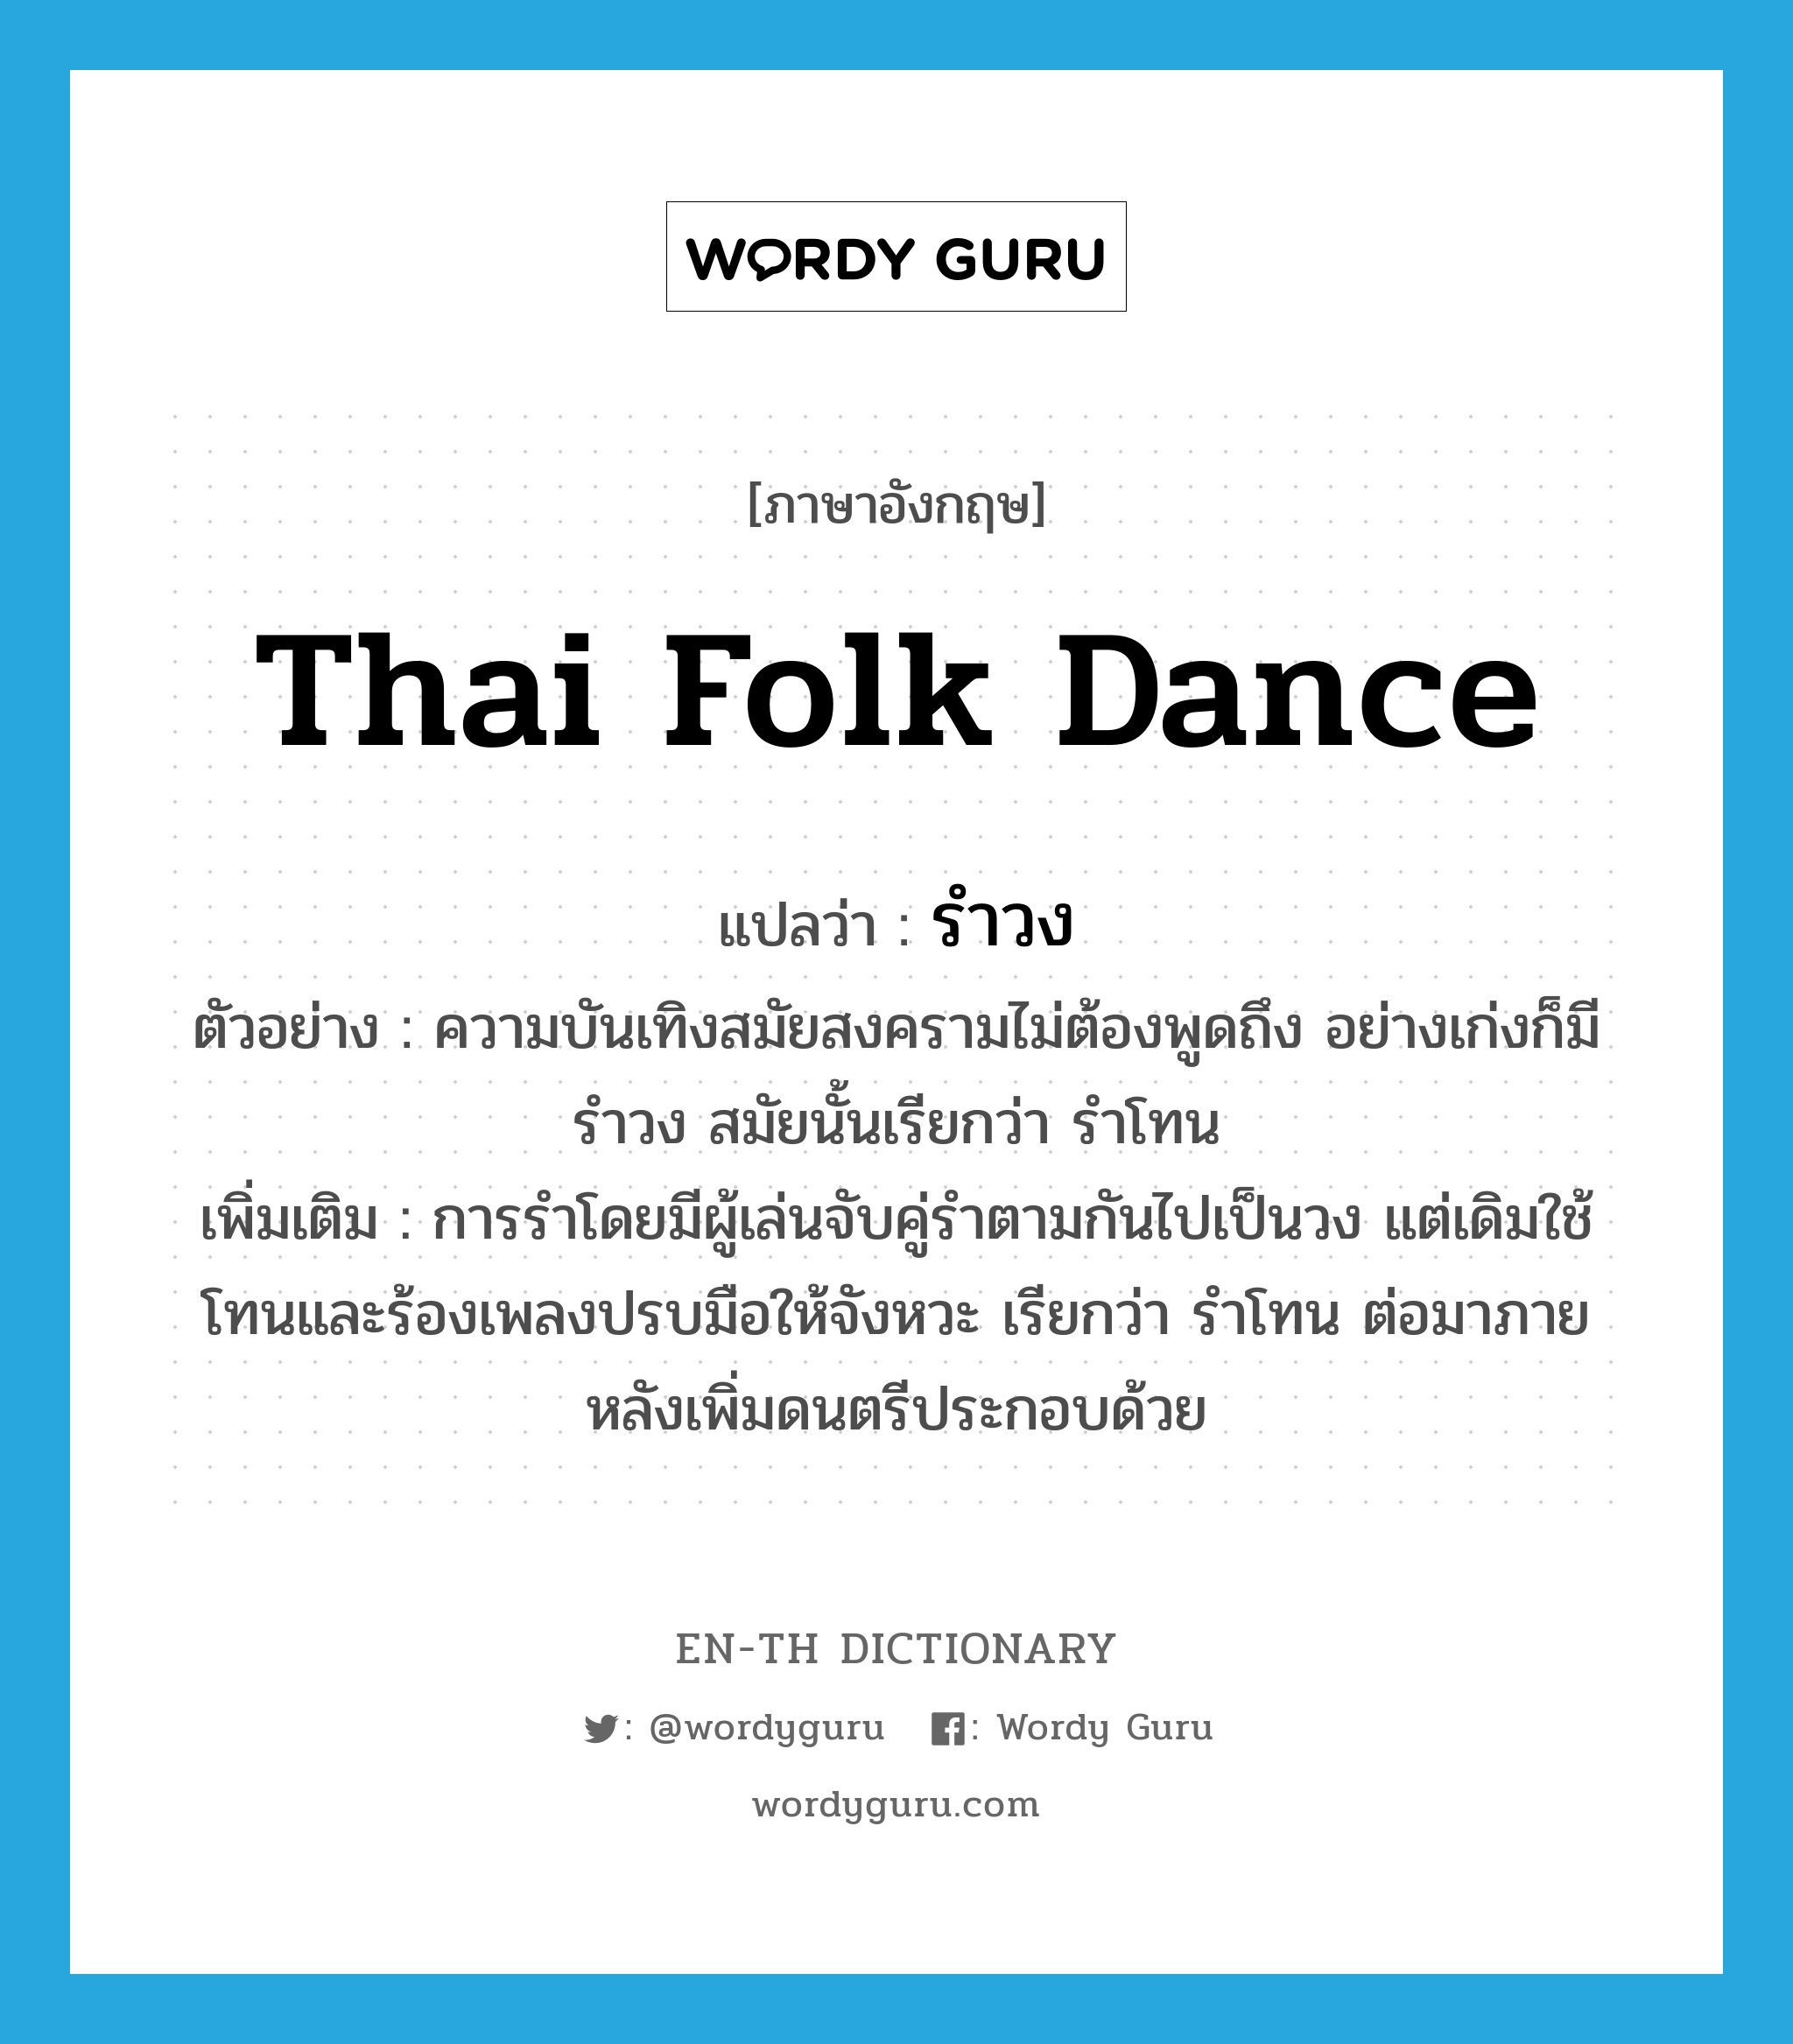 รำวง ภาษาอังกฤษ?, คำศัพท์ภาษาอังกฤษ รำวง แปลว่า Thai folk dance ประเภท N ตัวอย่าง ความบันเทิงสมัยสงครามไม่ต้องพูดถึง อย่างเก่งก็มีรำวง สมัยนั้นเรียกว่า รำโทน เพิ่มเติม การรำโดยมีผู้เล่นจับคู่รำตามกันไปเป็นวง แต่เดิมใช้โทนและร้องเพลงปรบมือให้จังหวะ เรียกว่า รำโทน ต่อมาภายหลังเพิ่มดนตรีประกอบด้วย หมวด N